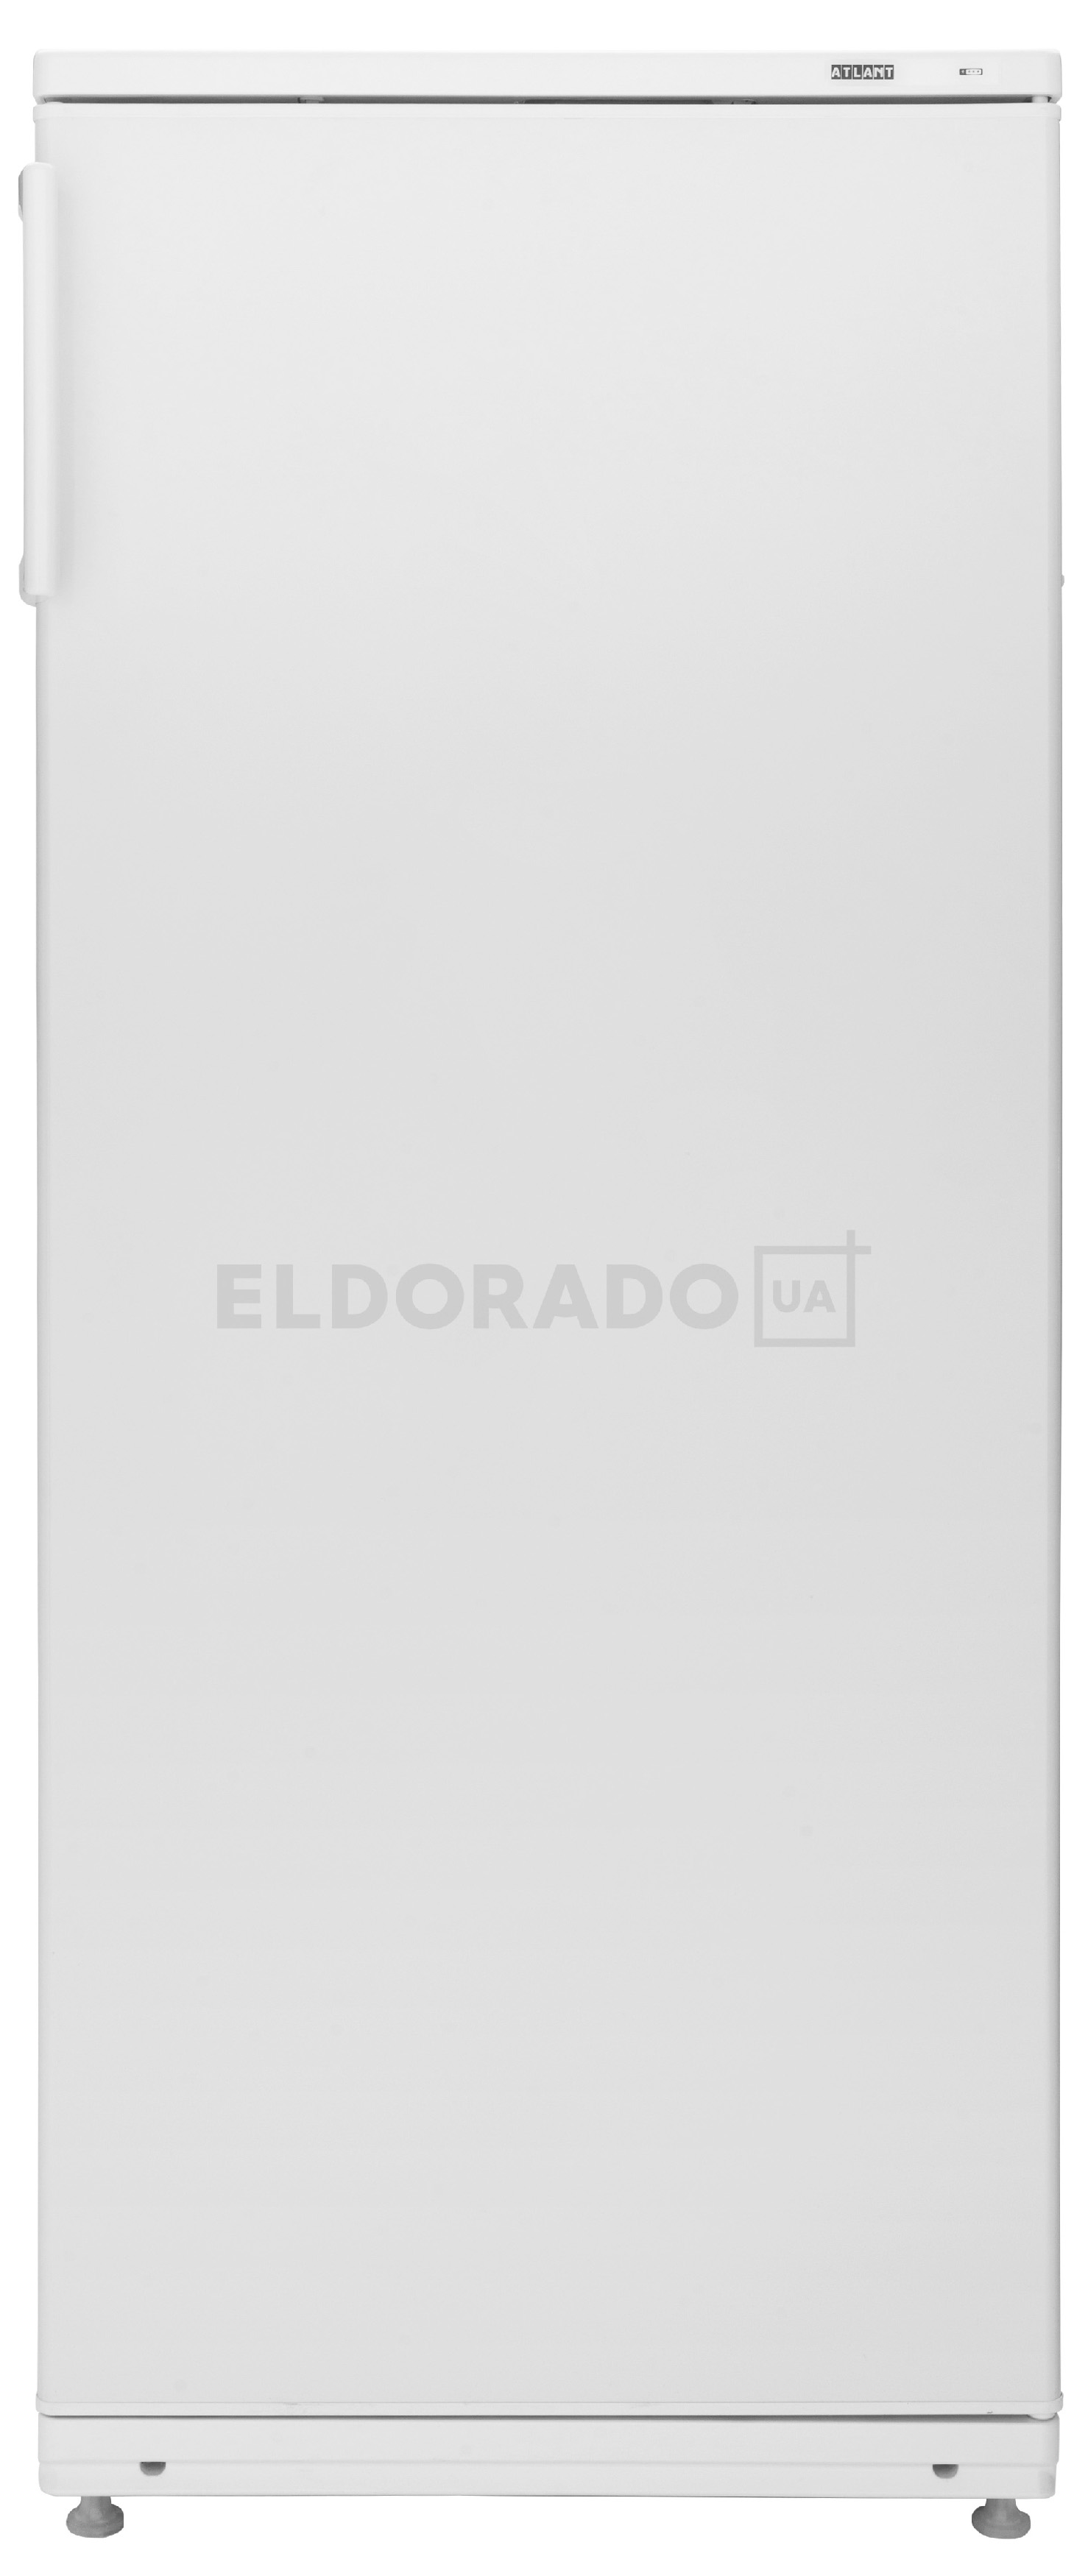 Акция на Холодильник ATLANT MX 2823-66 от Eldorado